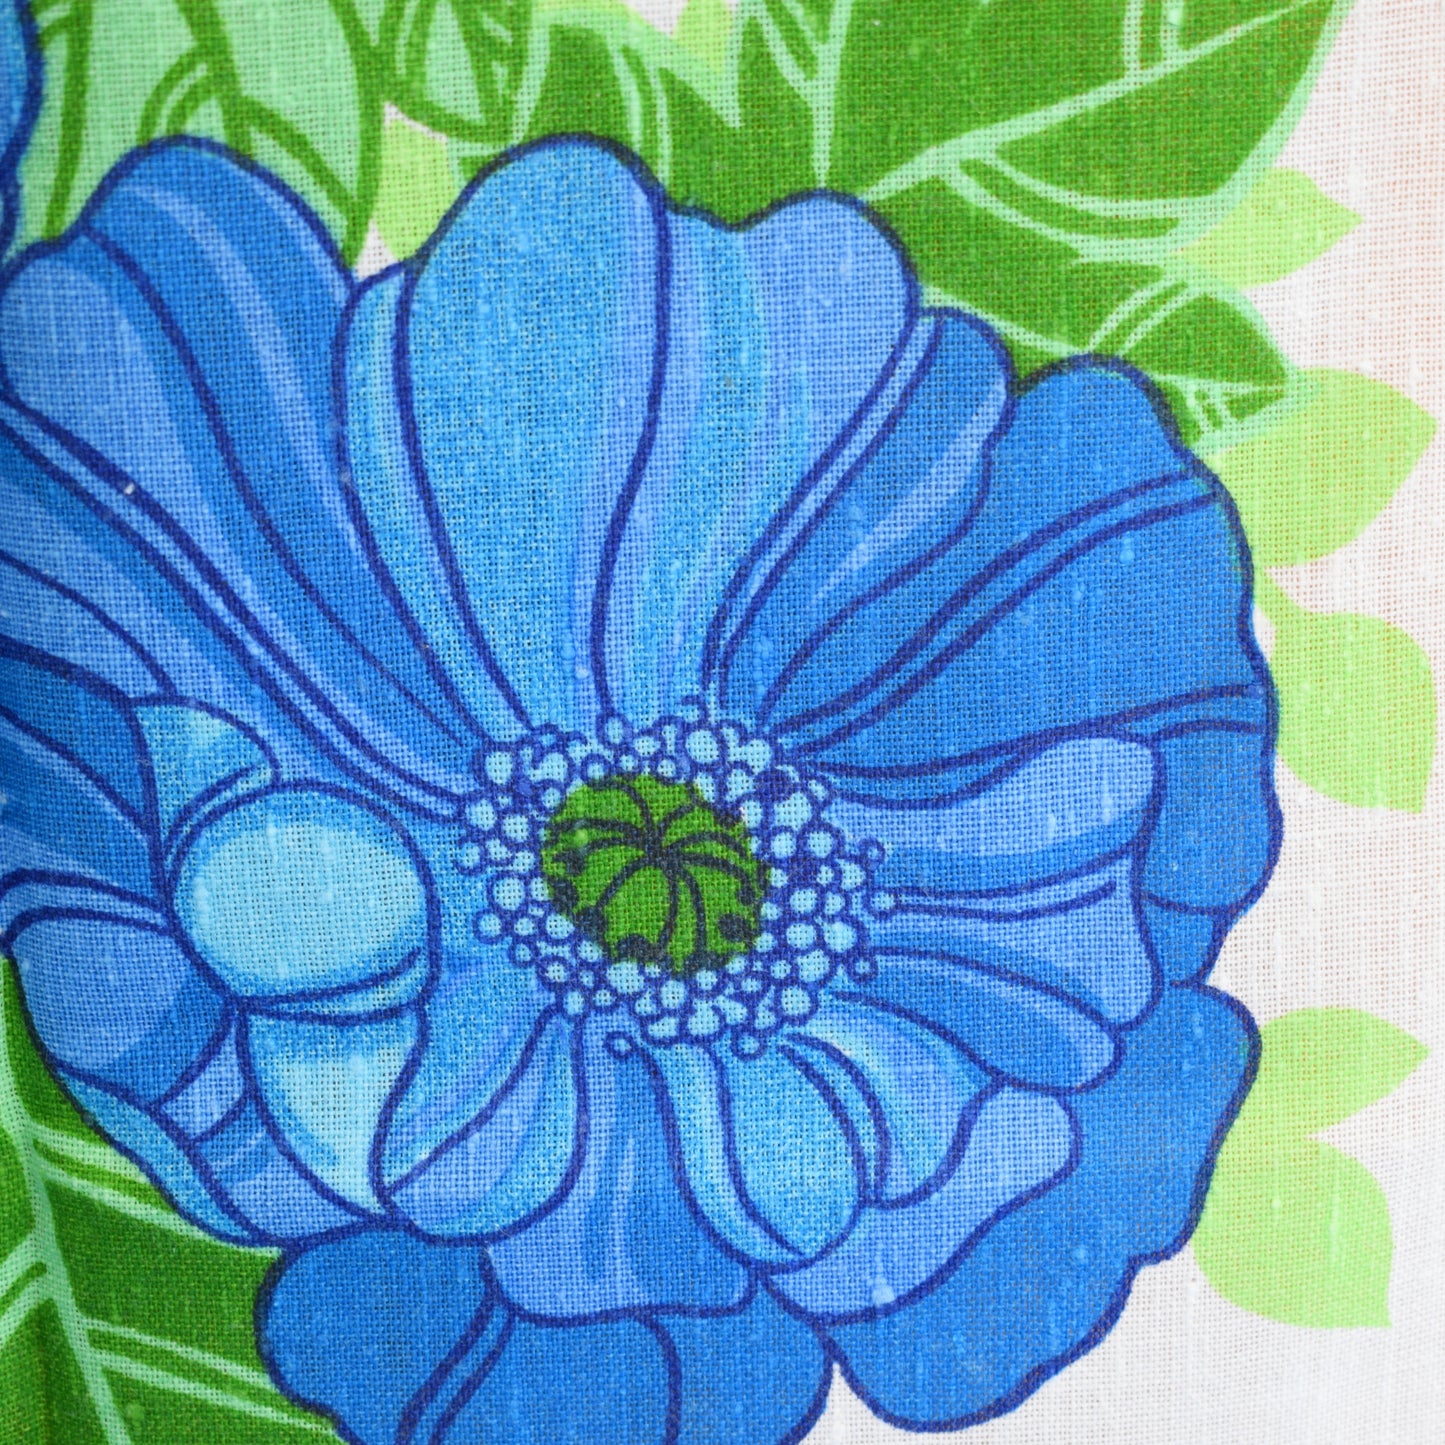 Vintage 1960s Cotton Tea Towel - Flower Power - Blue